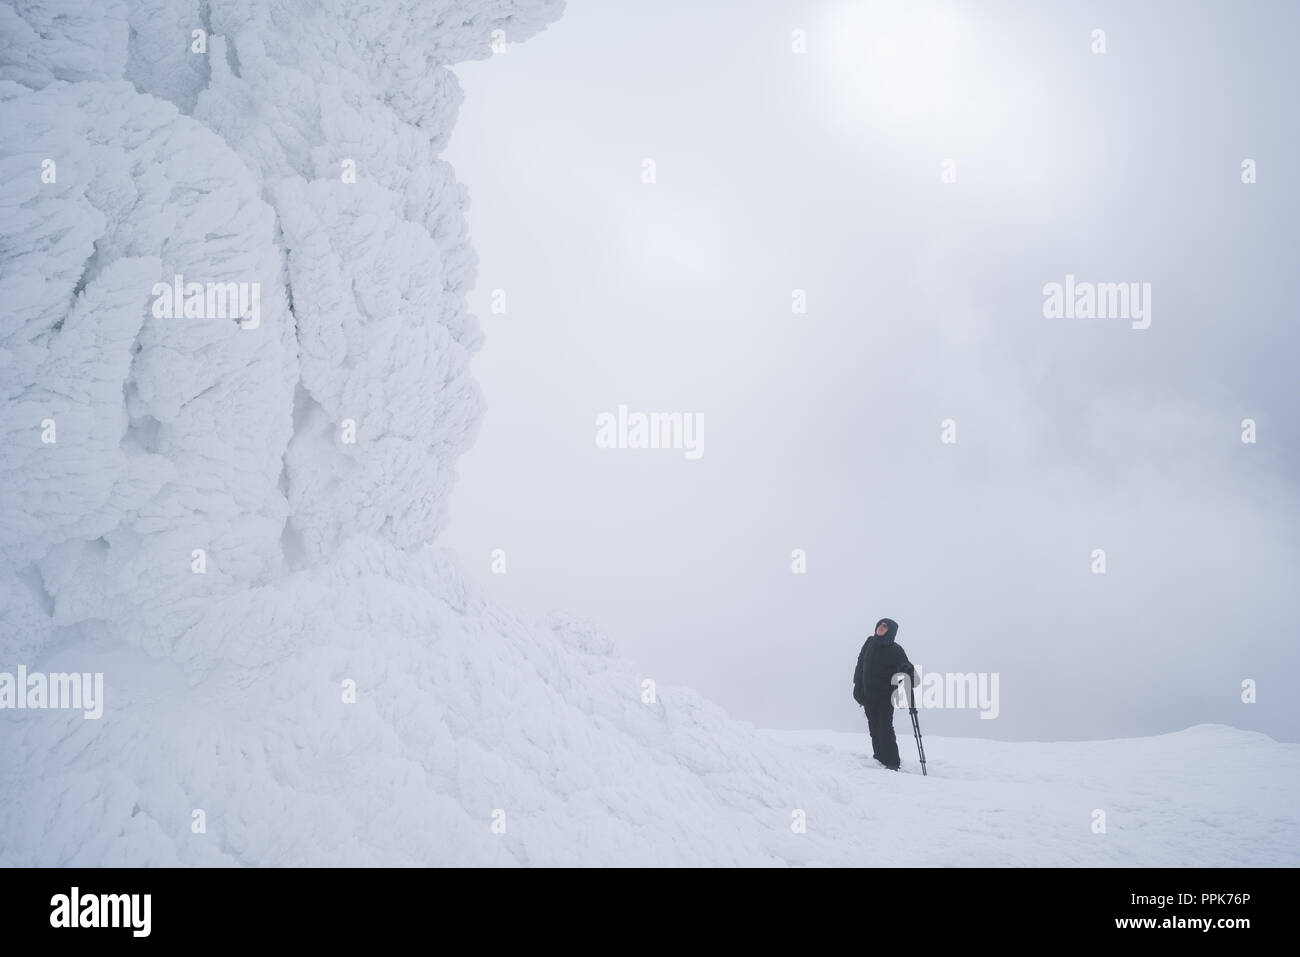 Météo montagne sévère en hiver. La neige et le givre sur les rochers. Tourisme d'aventure en randonnée pédestre Banque D'Images